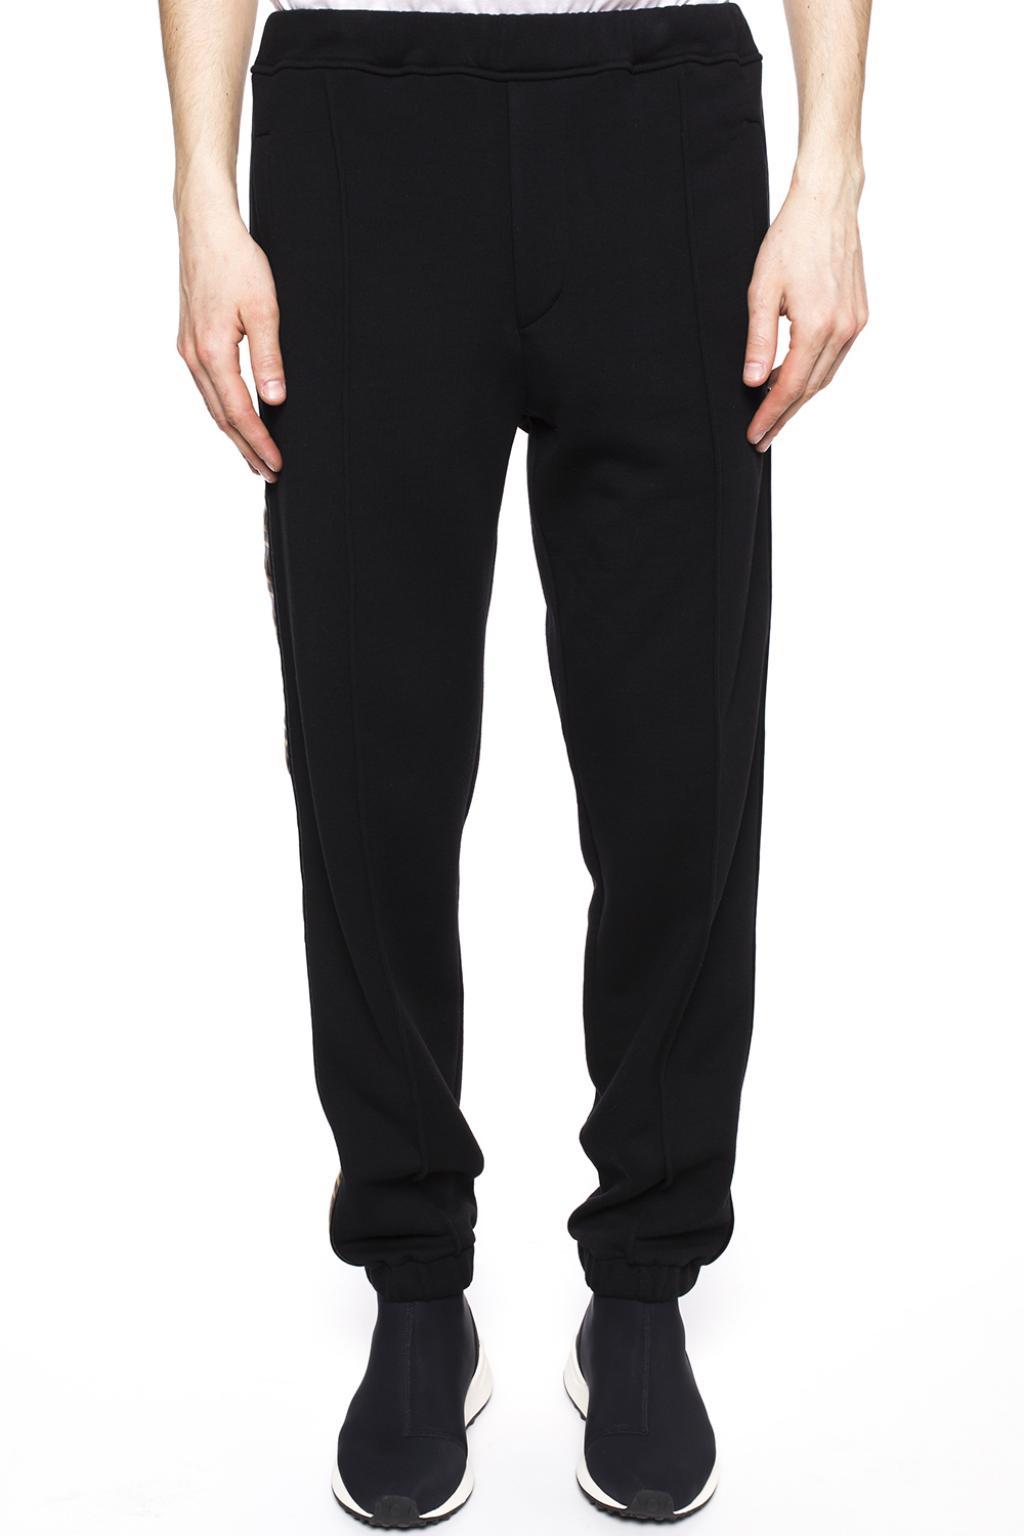 Fendi Wool Logo Sweatpants in Black for Men - Lyst